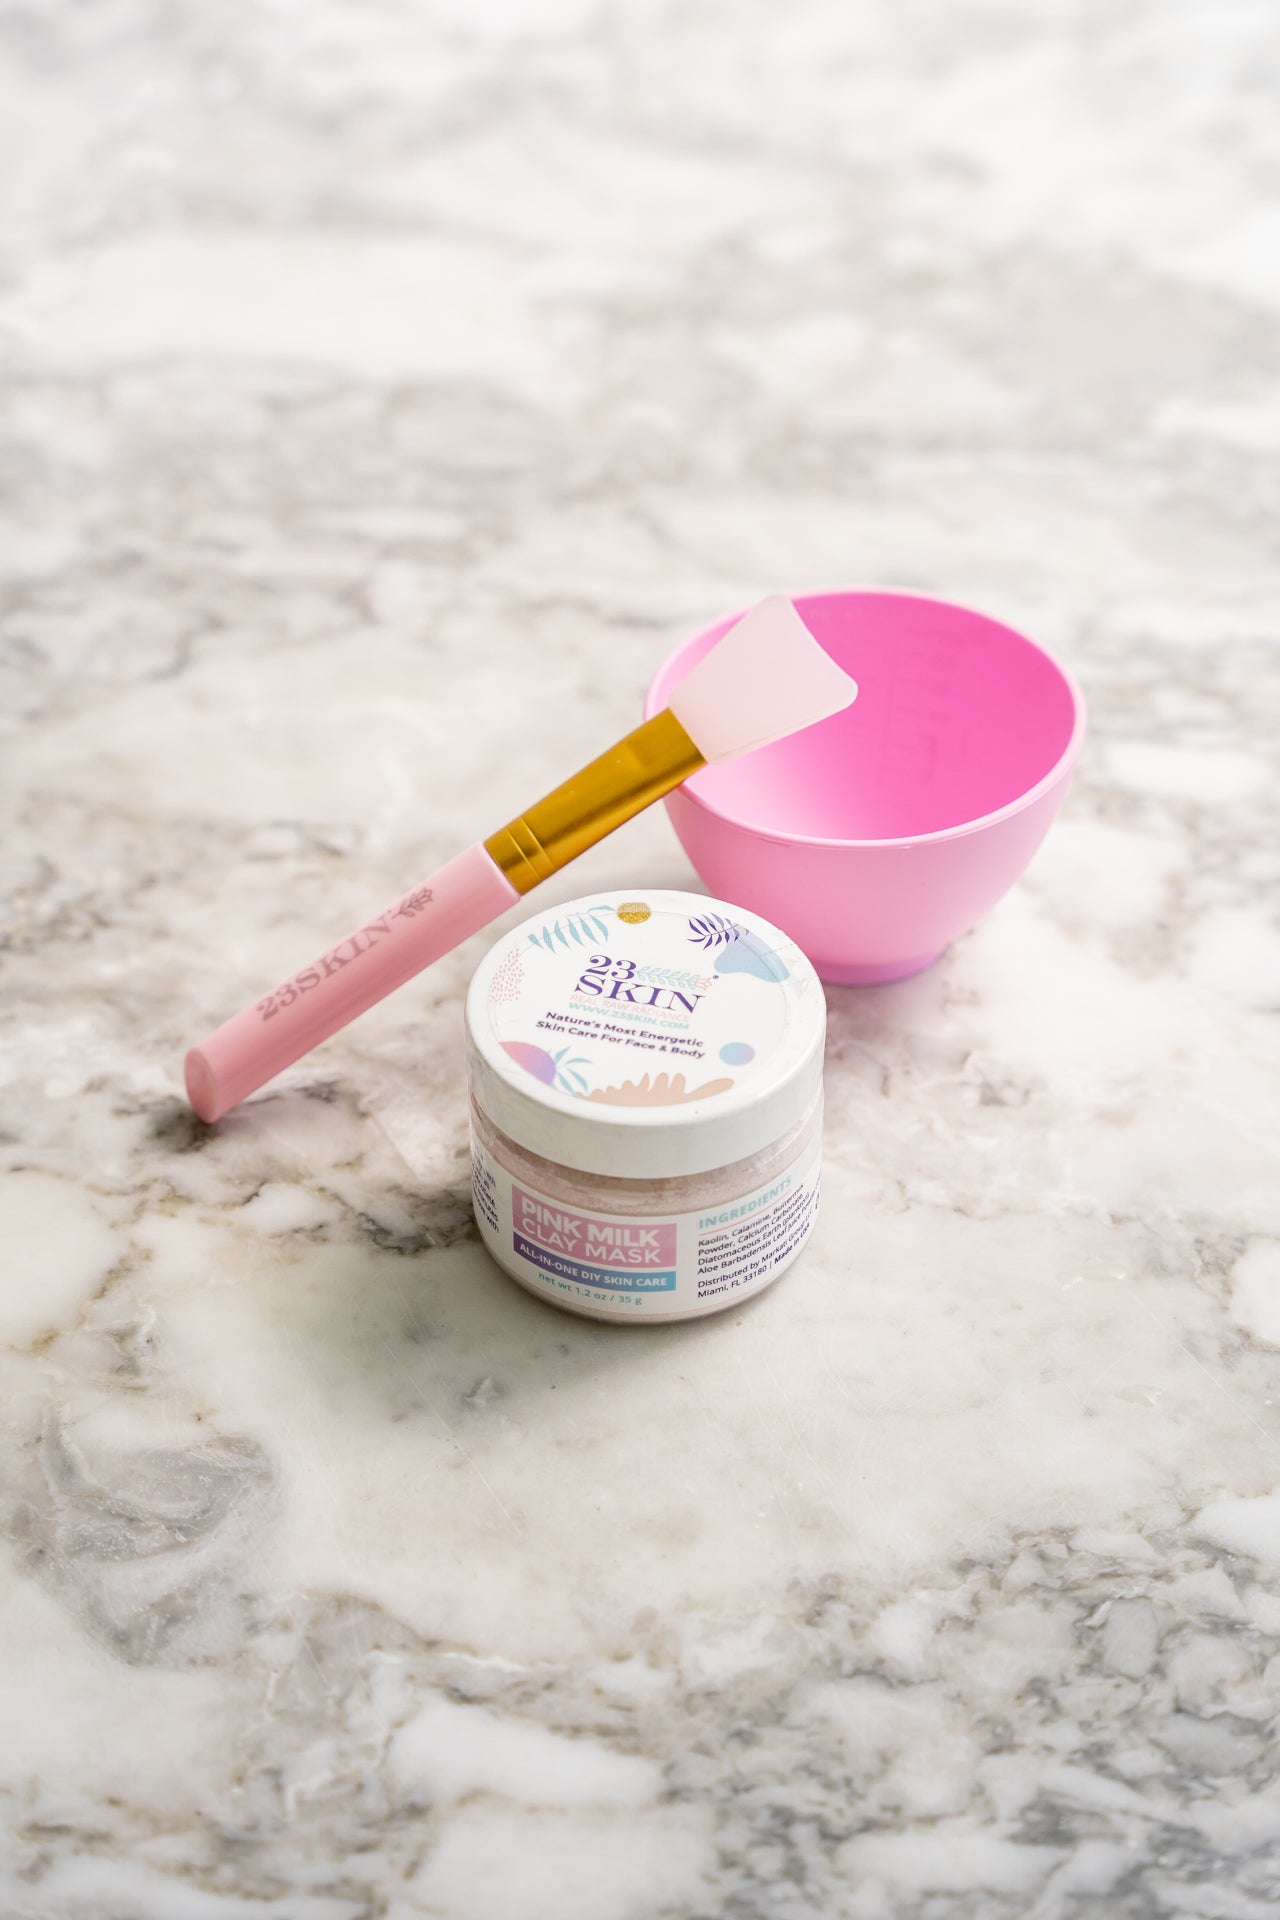 23 SKIN Pink Milk Clay Powder Starter Kit